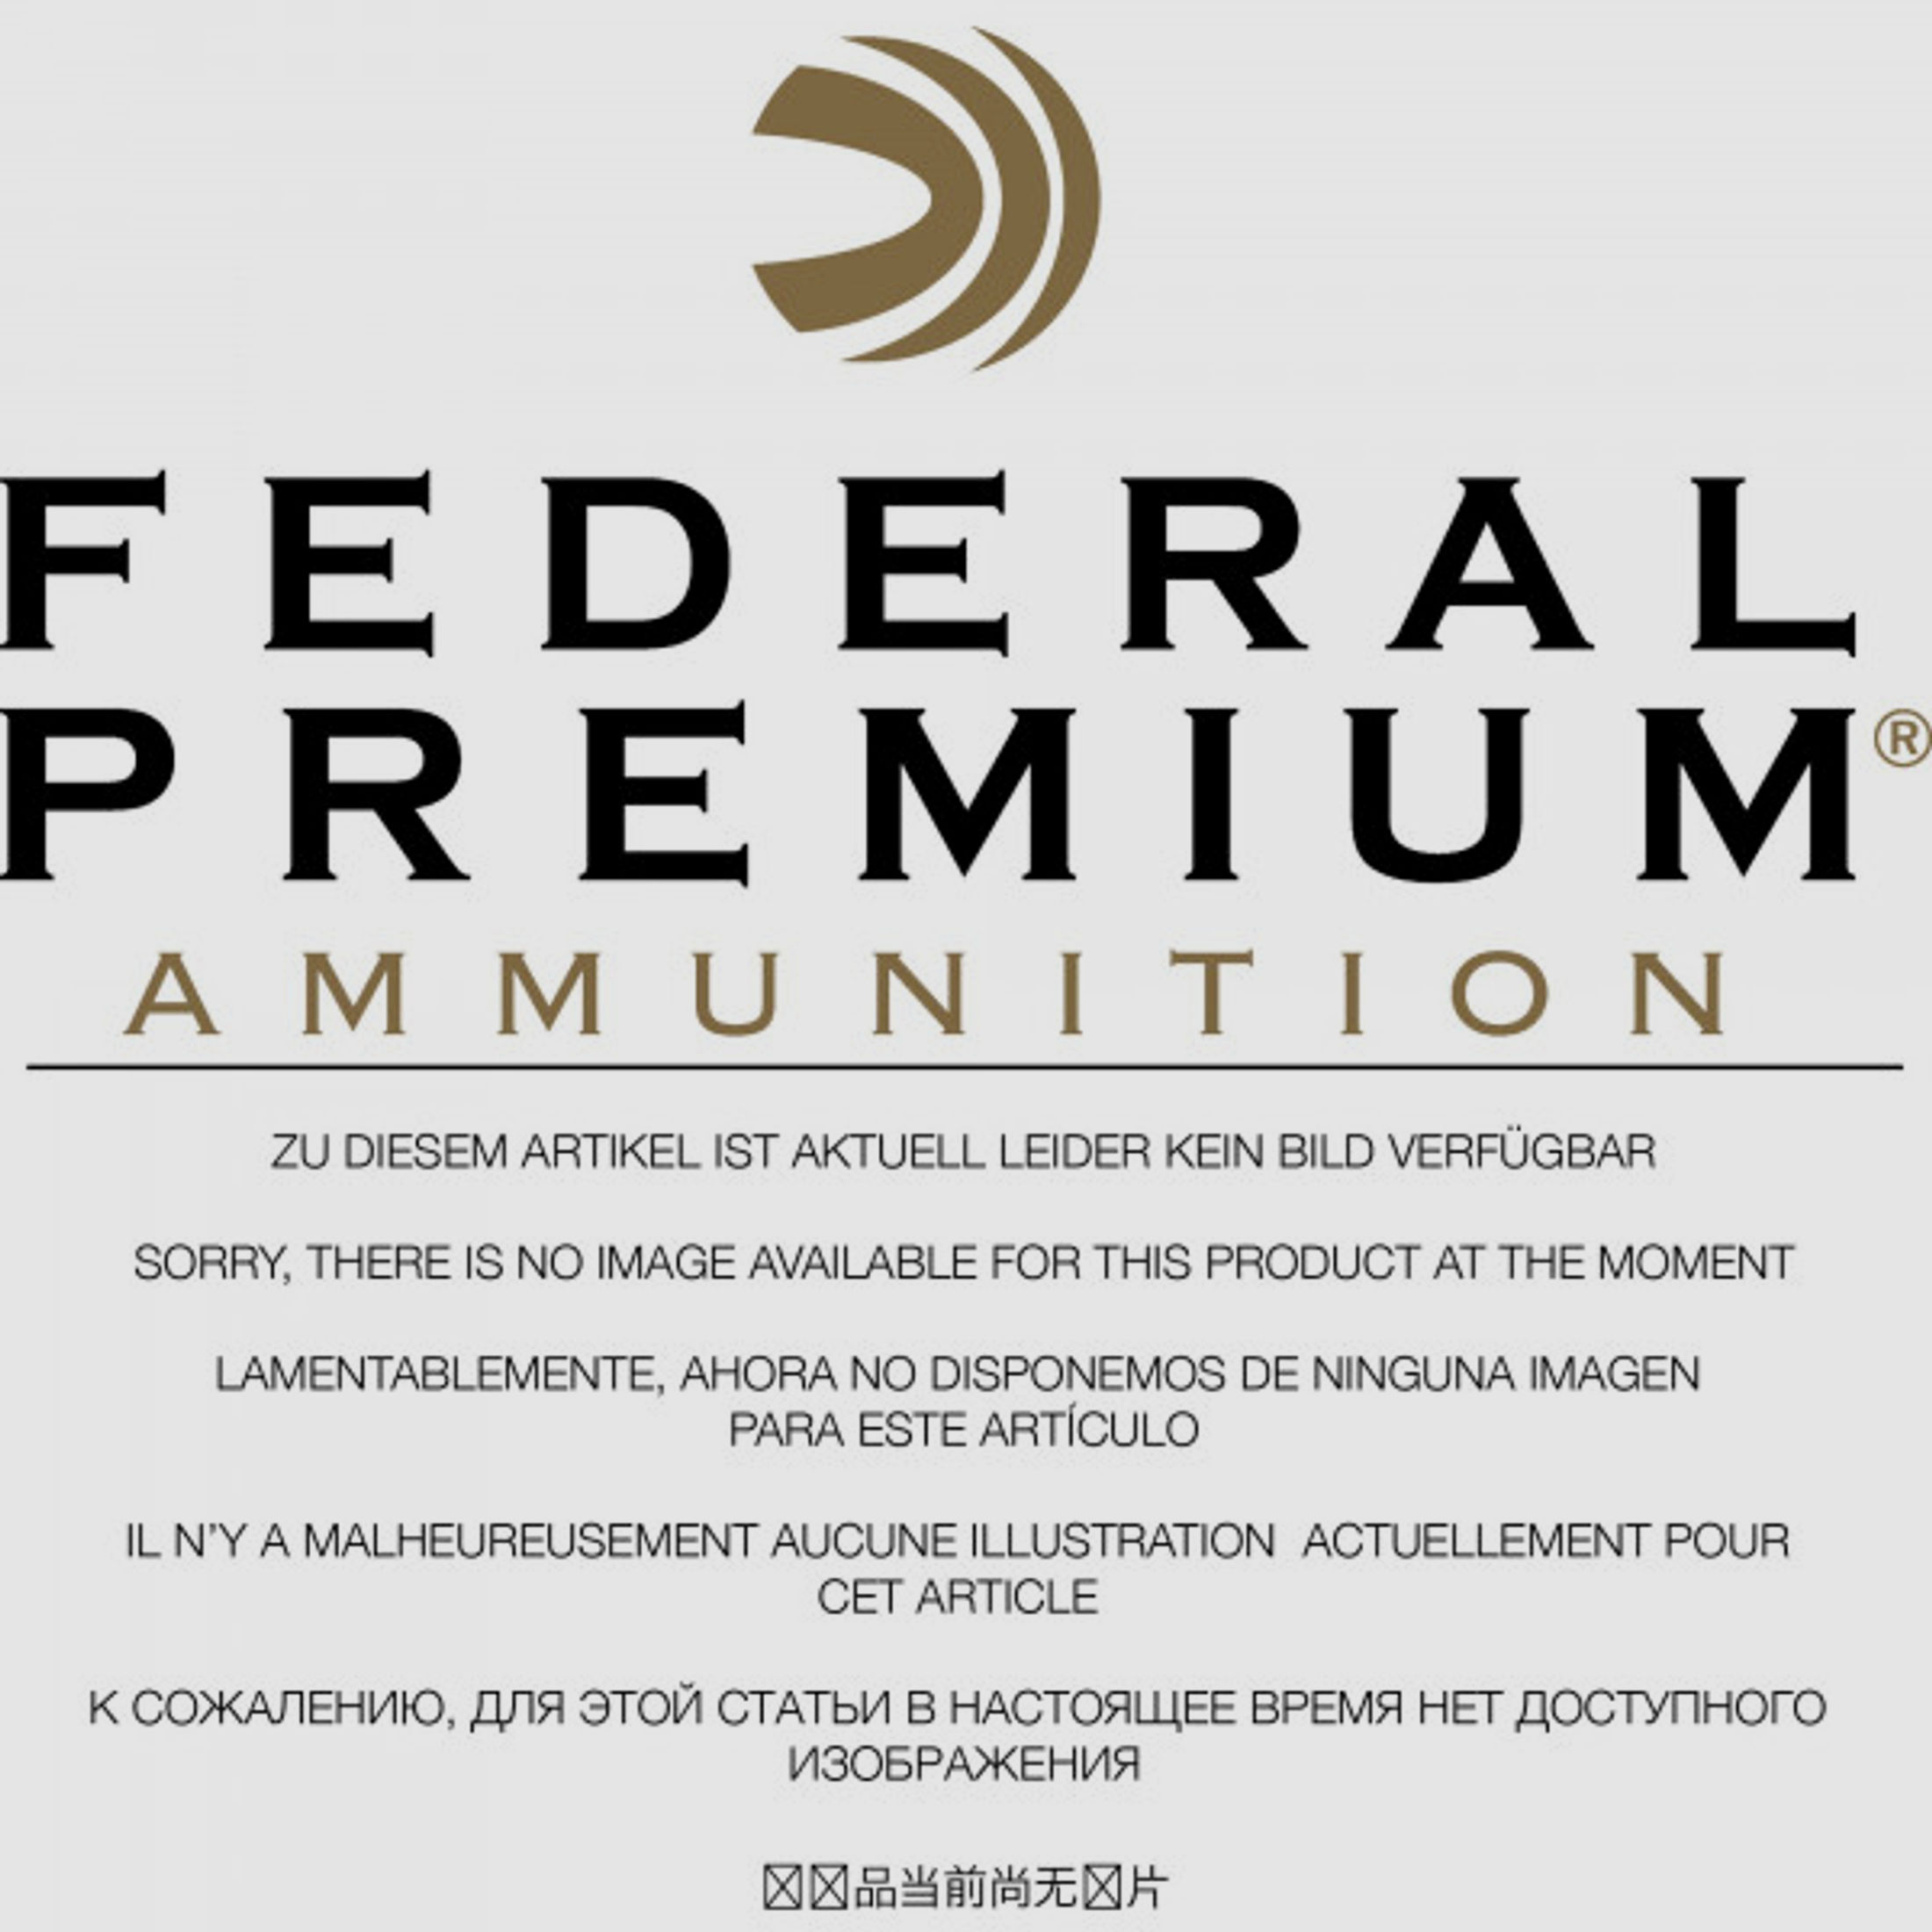 Federal Premium 20/76 21,25g - 328grs Vital-Shok TruBall Rifled Slug Flintenlaufgeschosse